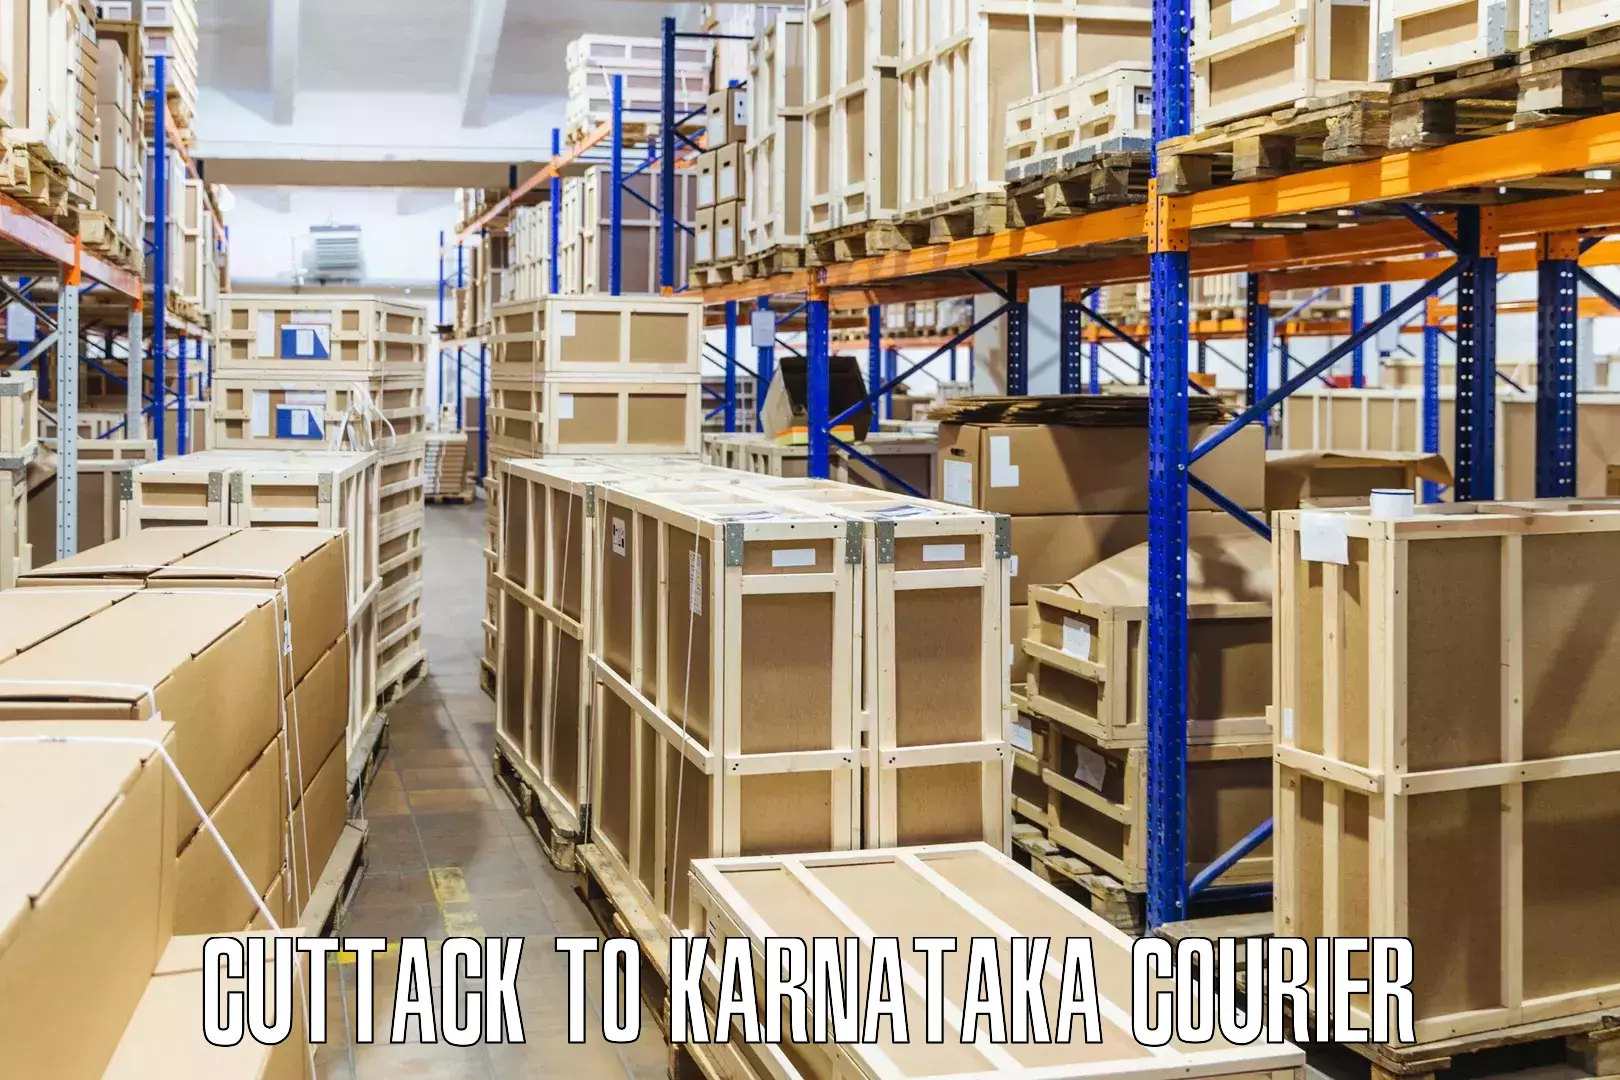 High-priority parcel service Cuttack to Bagaluru